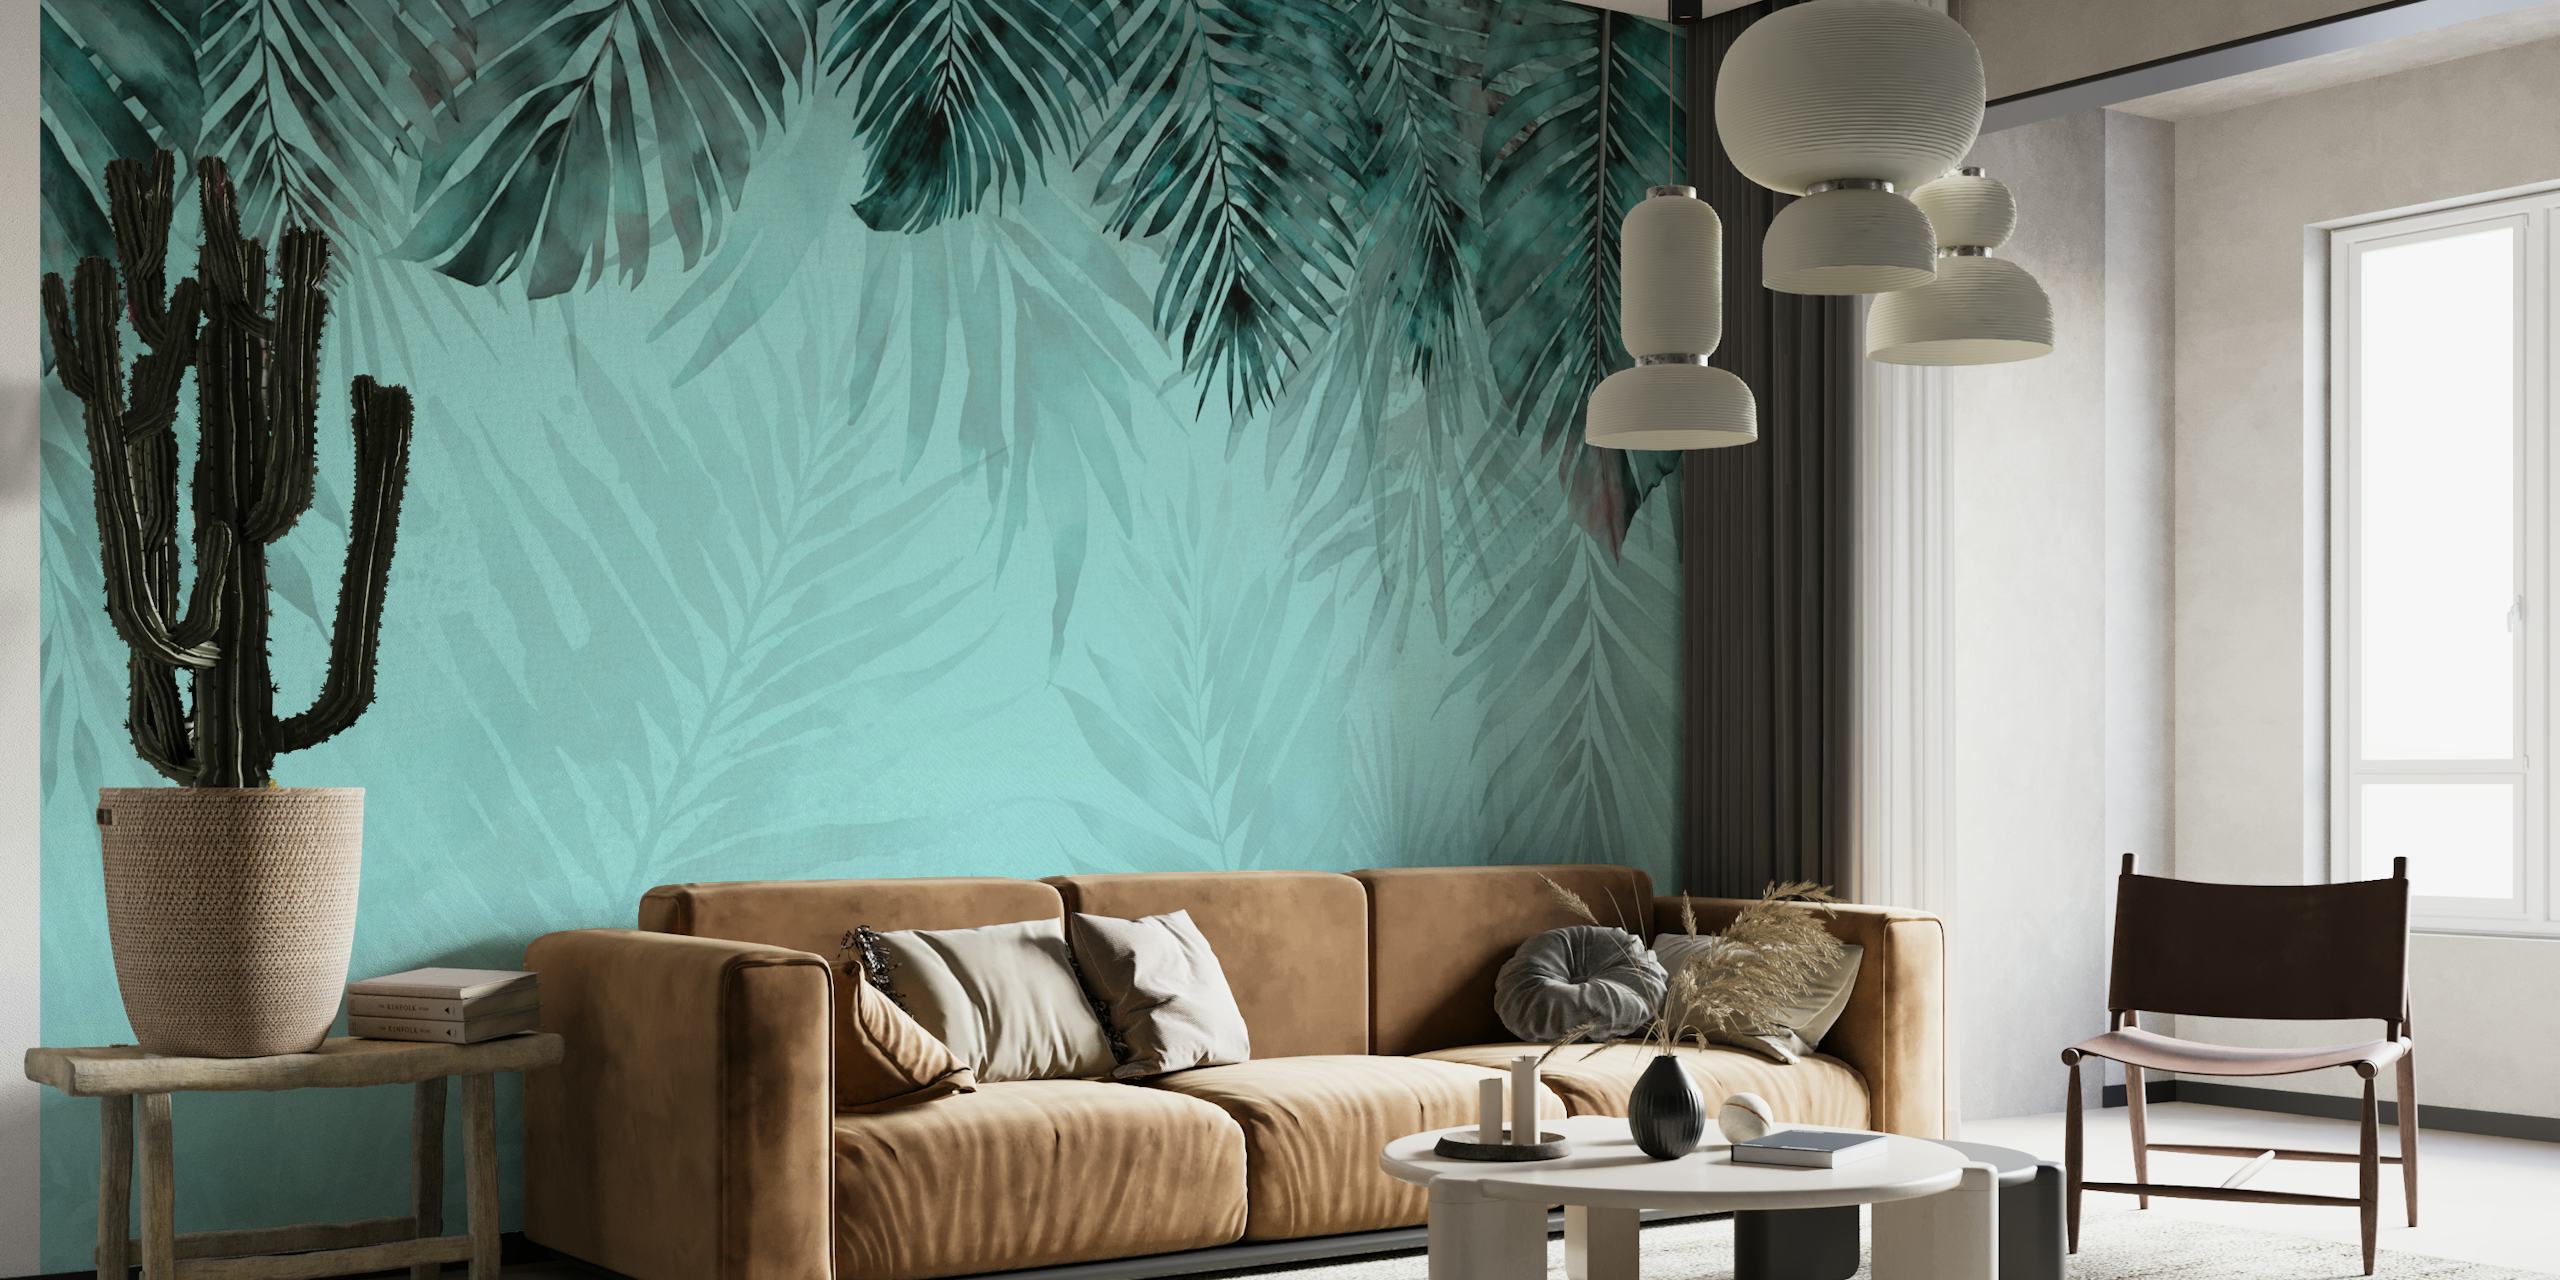 Vægmaleri med turkis og blågrønt jungletema med tropiske løvmønstre